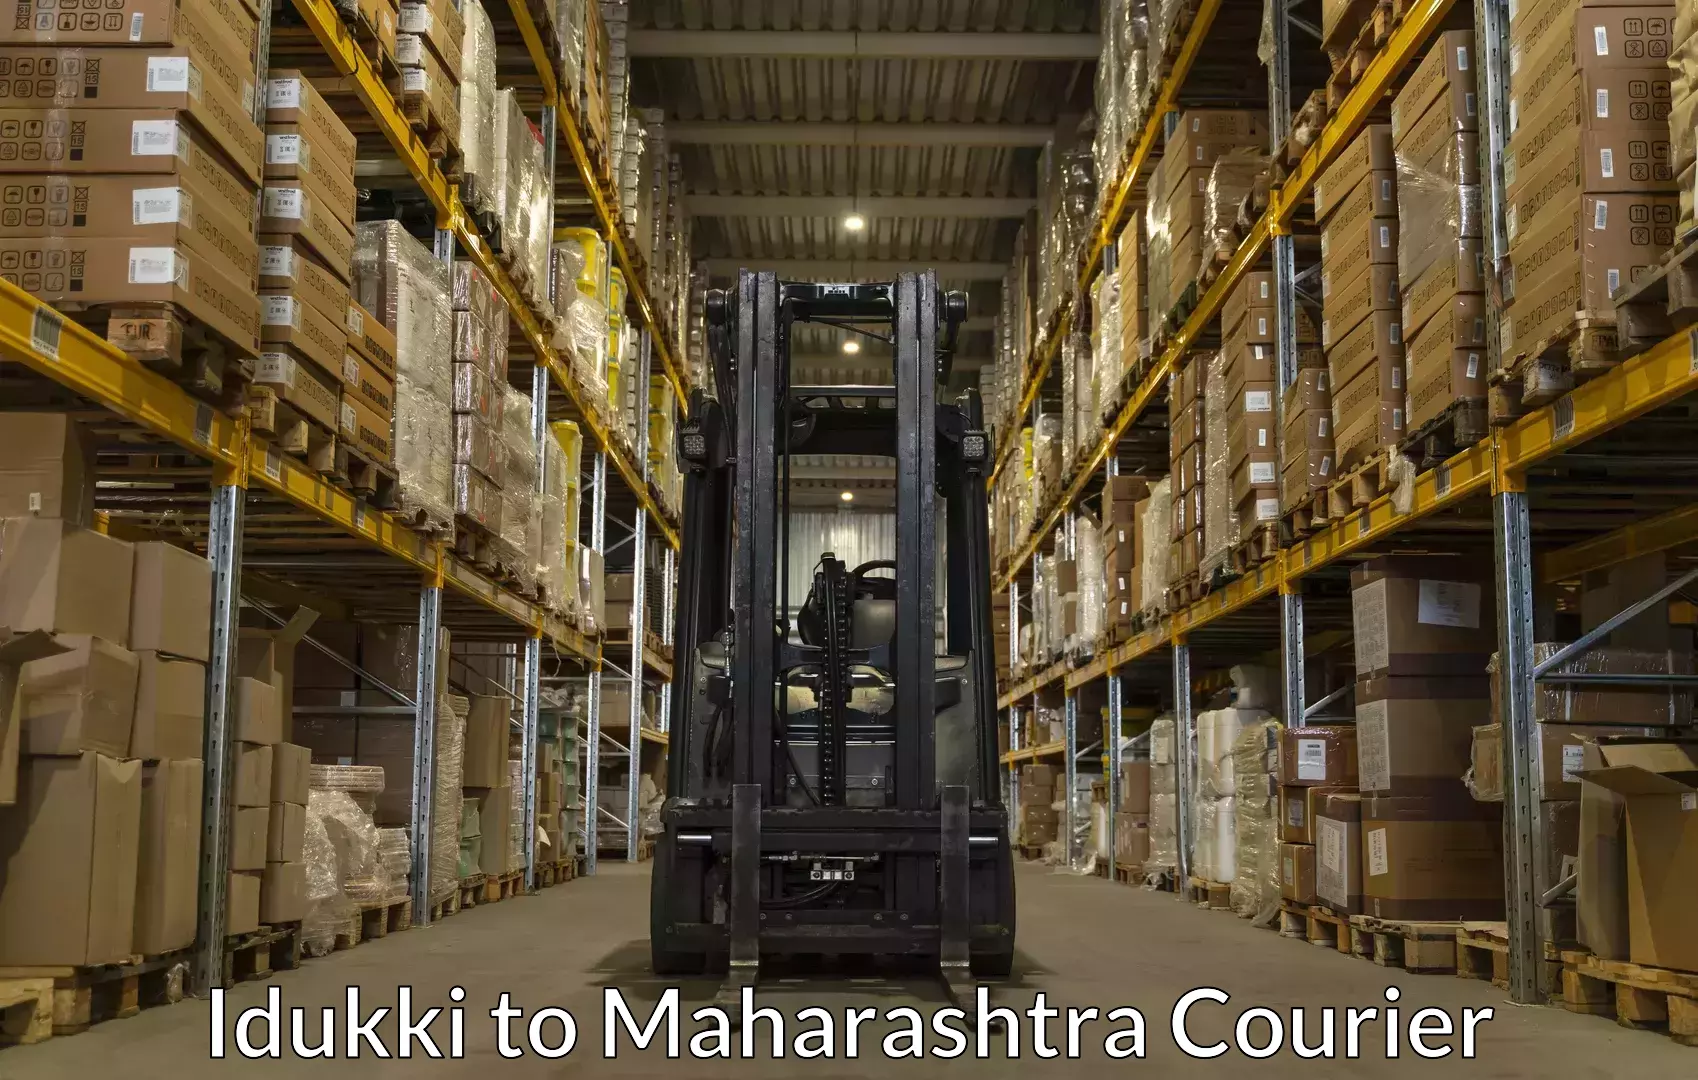 Luggage shipping specialists Idukki to Maharashtra